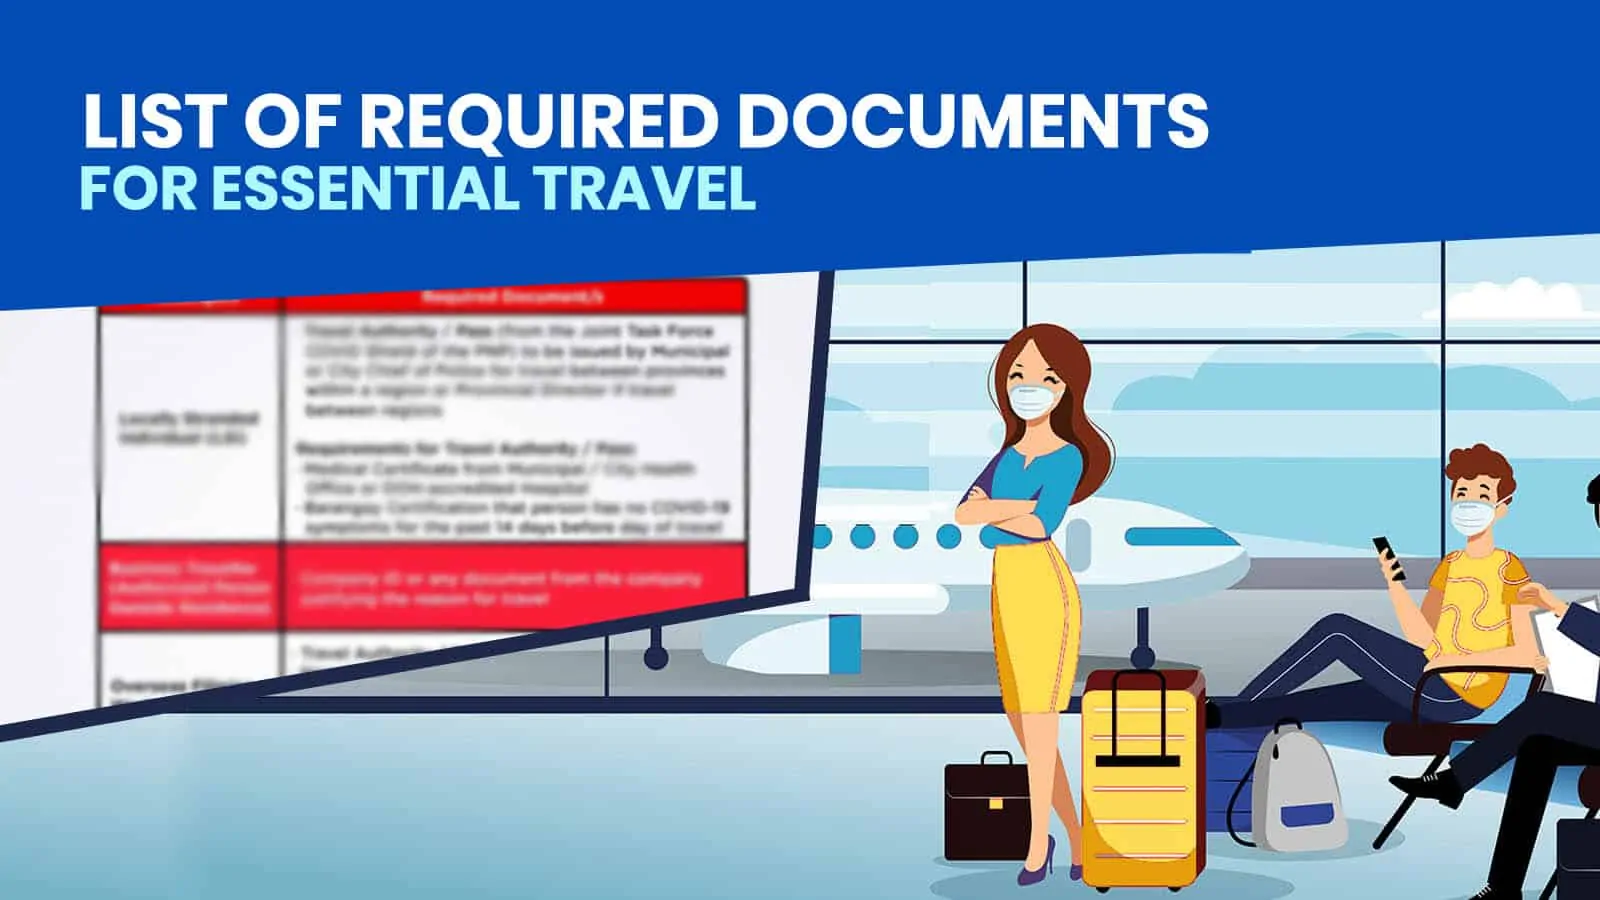 基本旅行要求清单:菲律宾航空公司，宿务太平洋航空公司，亚洲航空公司